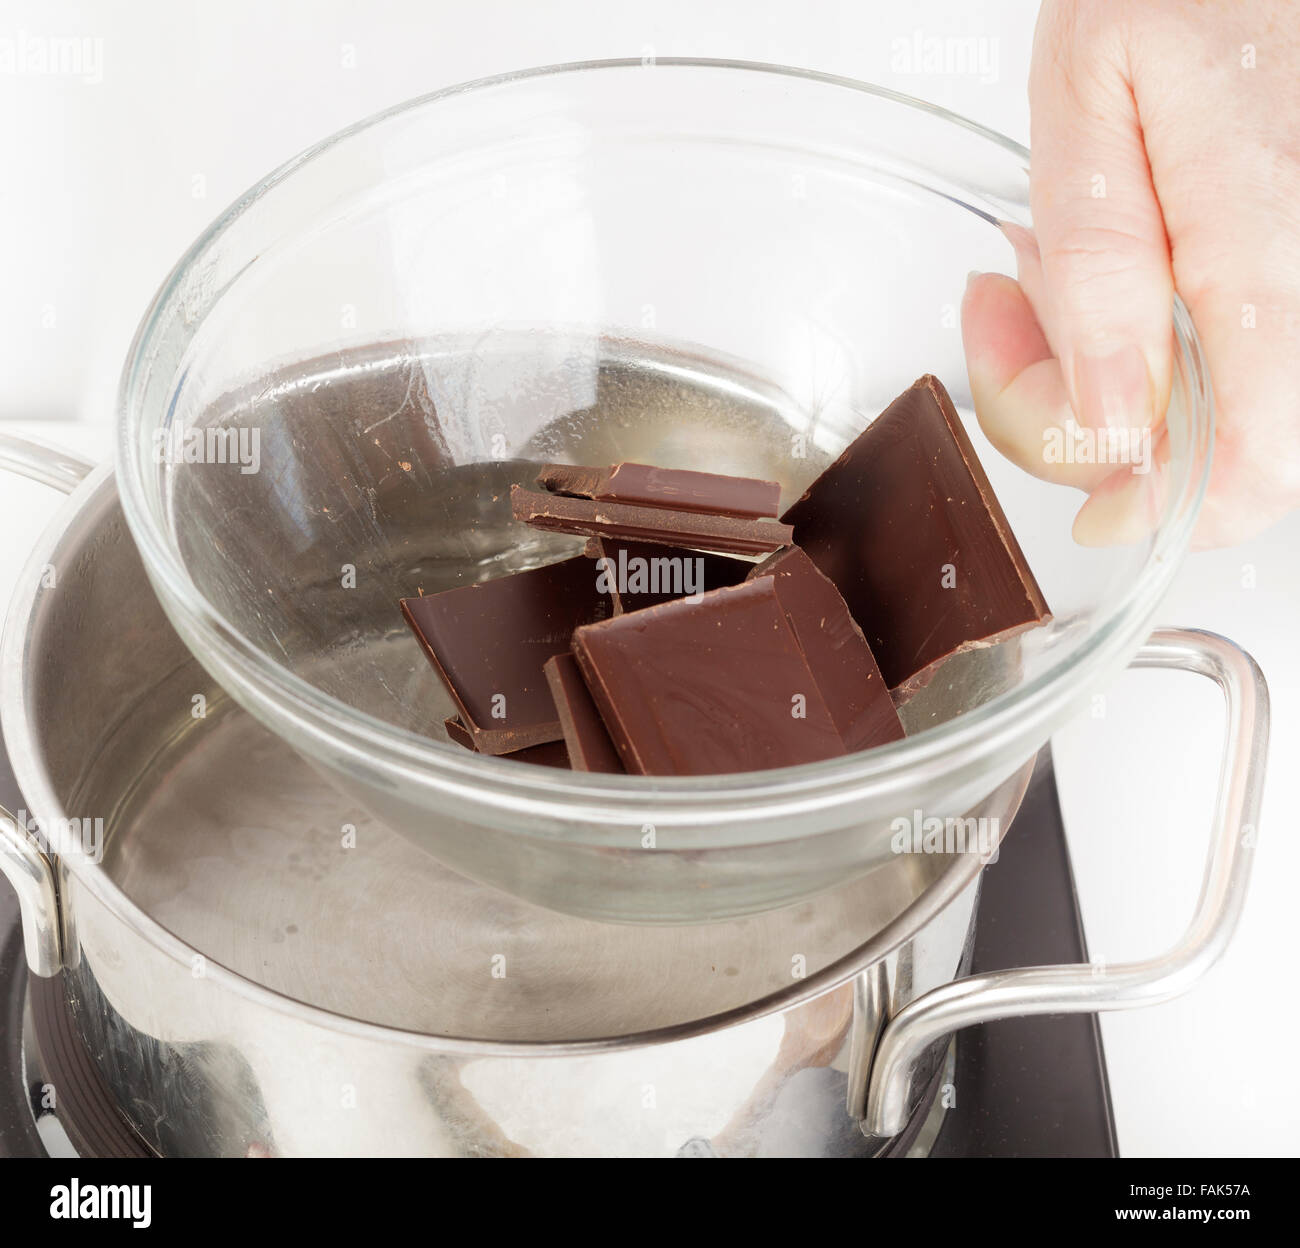 Colocar el tazón de chocolate más pan de agua para derretir como bain marie Foto de stock